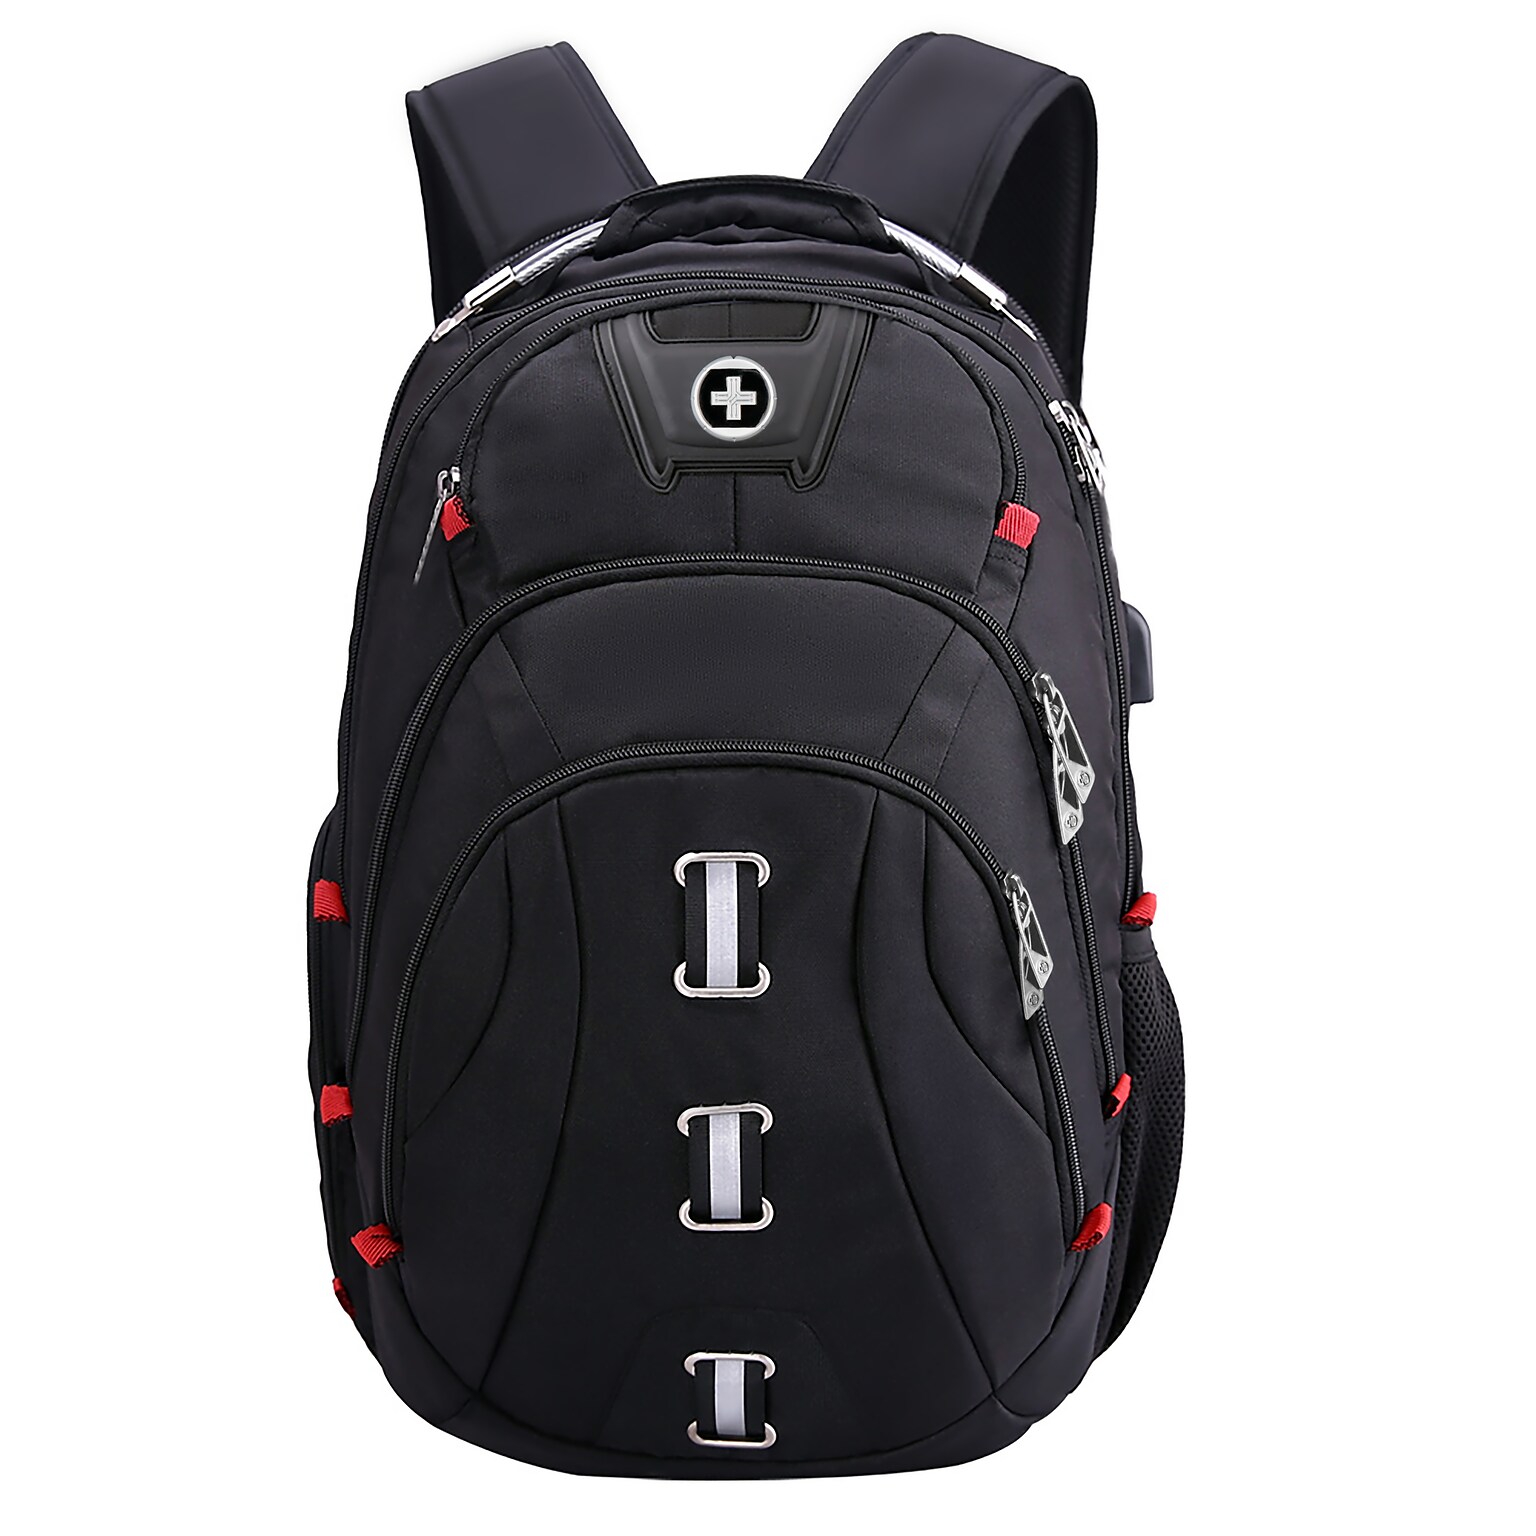 SwissDigital Pixel Business Travel Backpack, Black (SD-857)